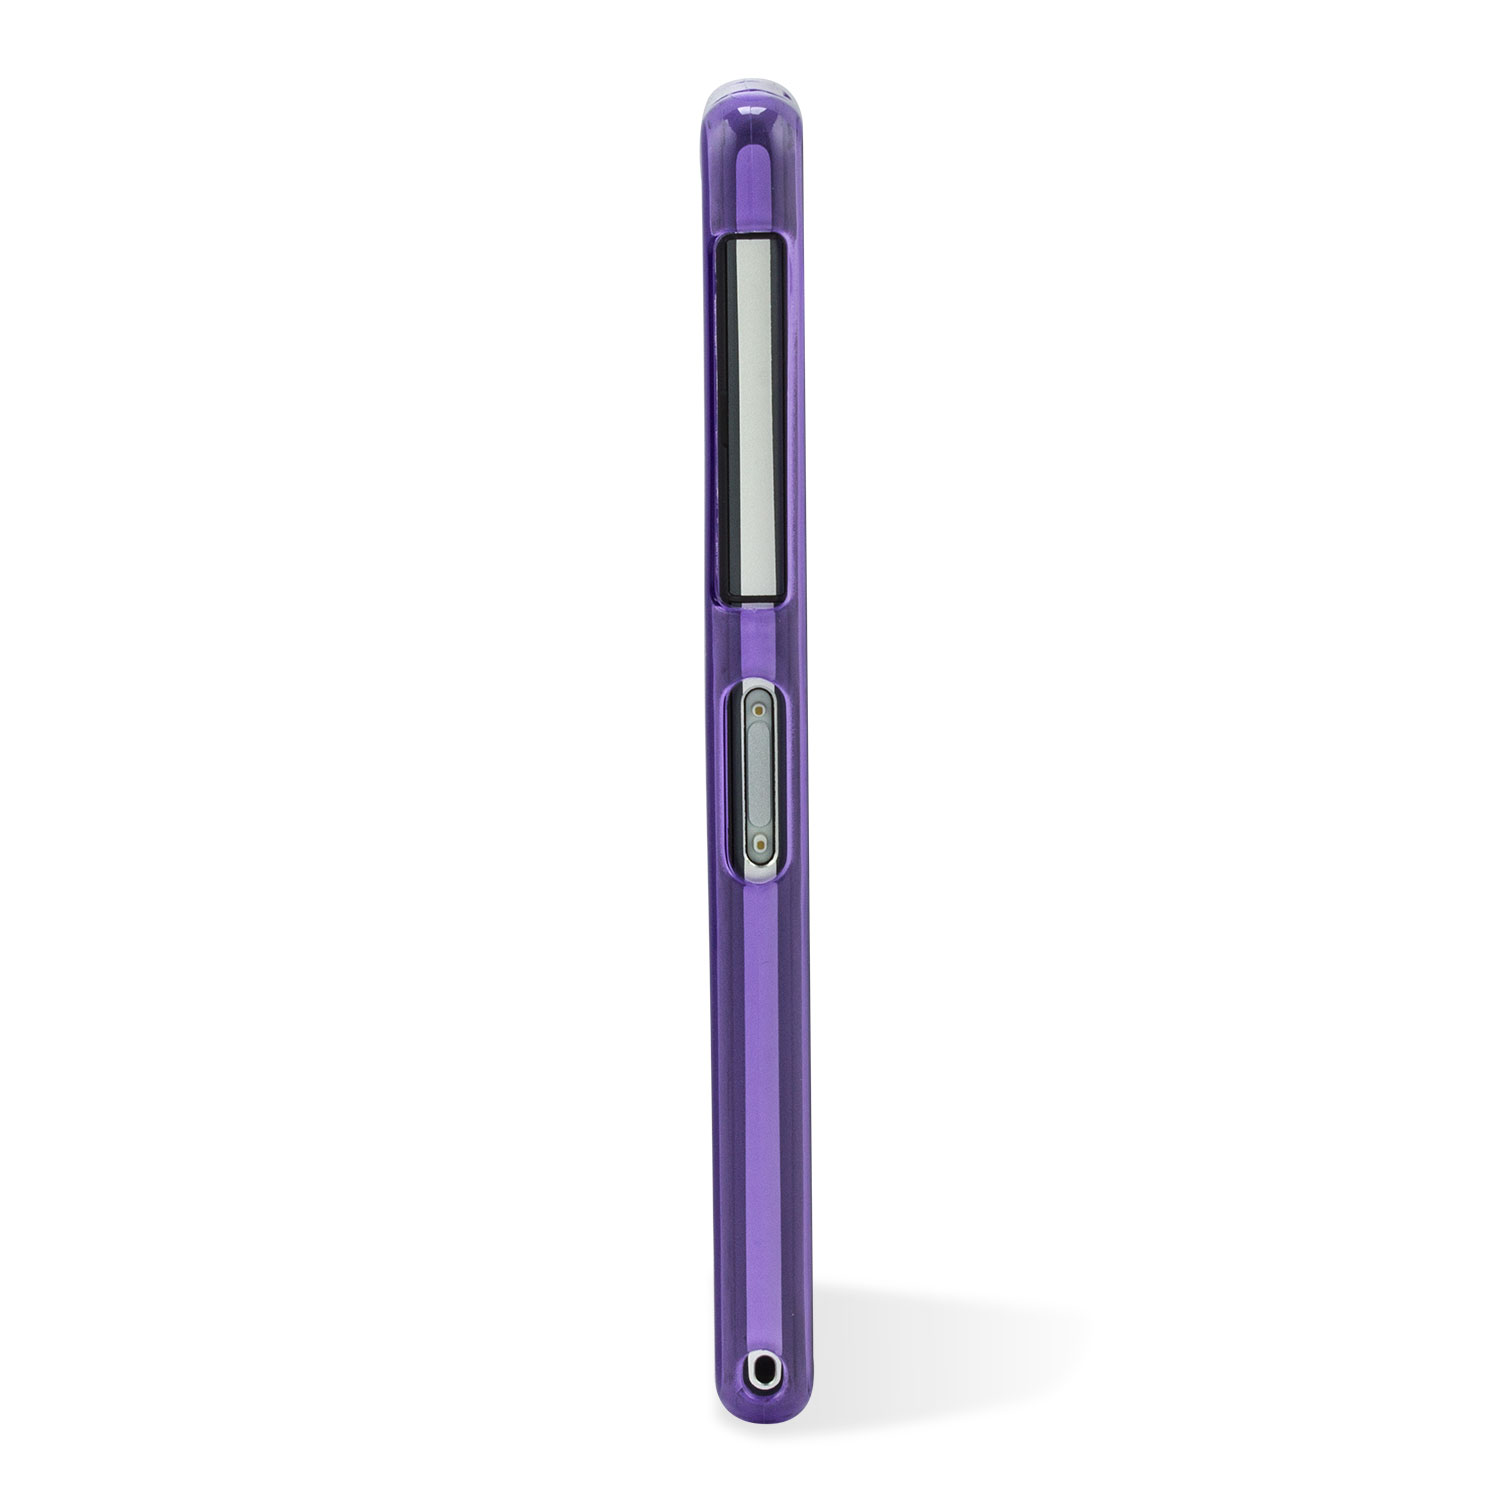 FlexiShield Skin for Sony Xperia Z2 - Purple